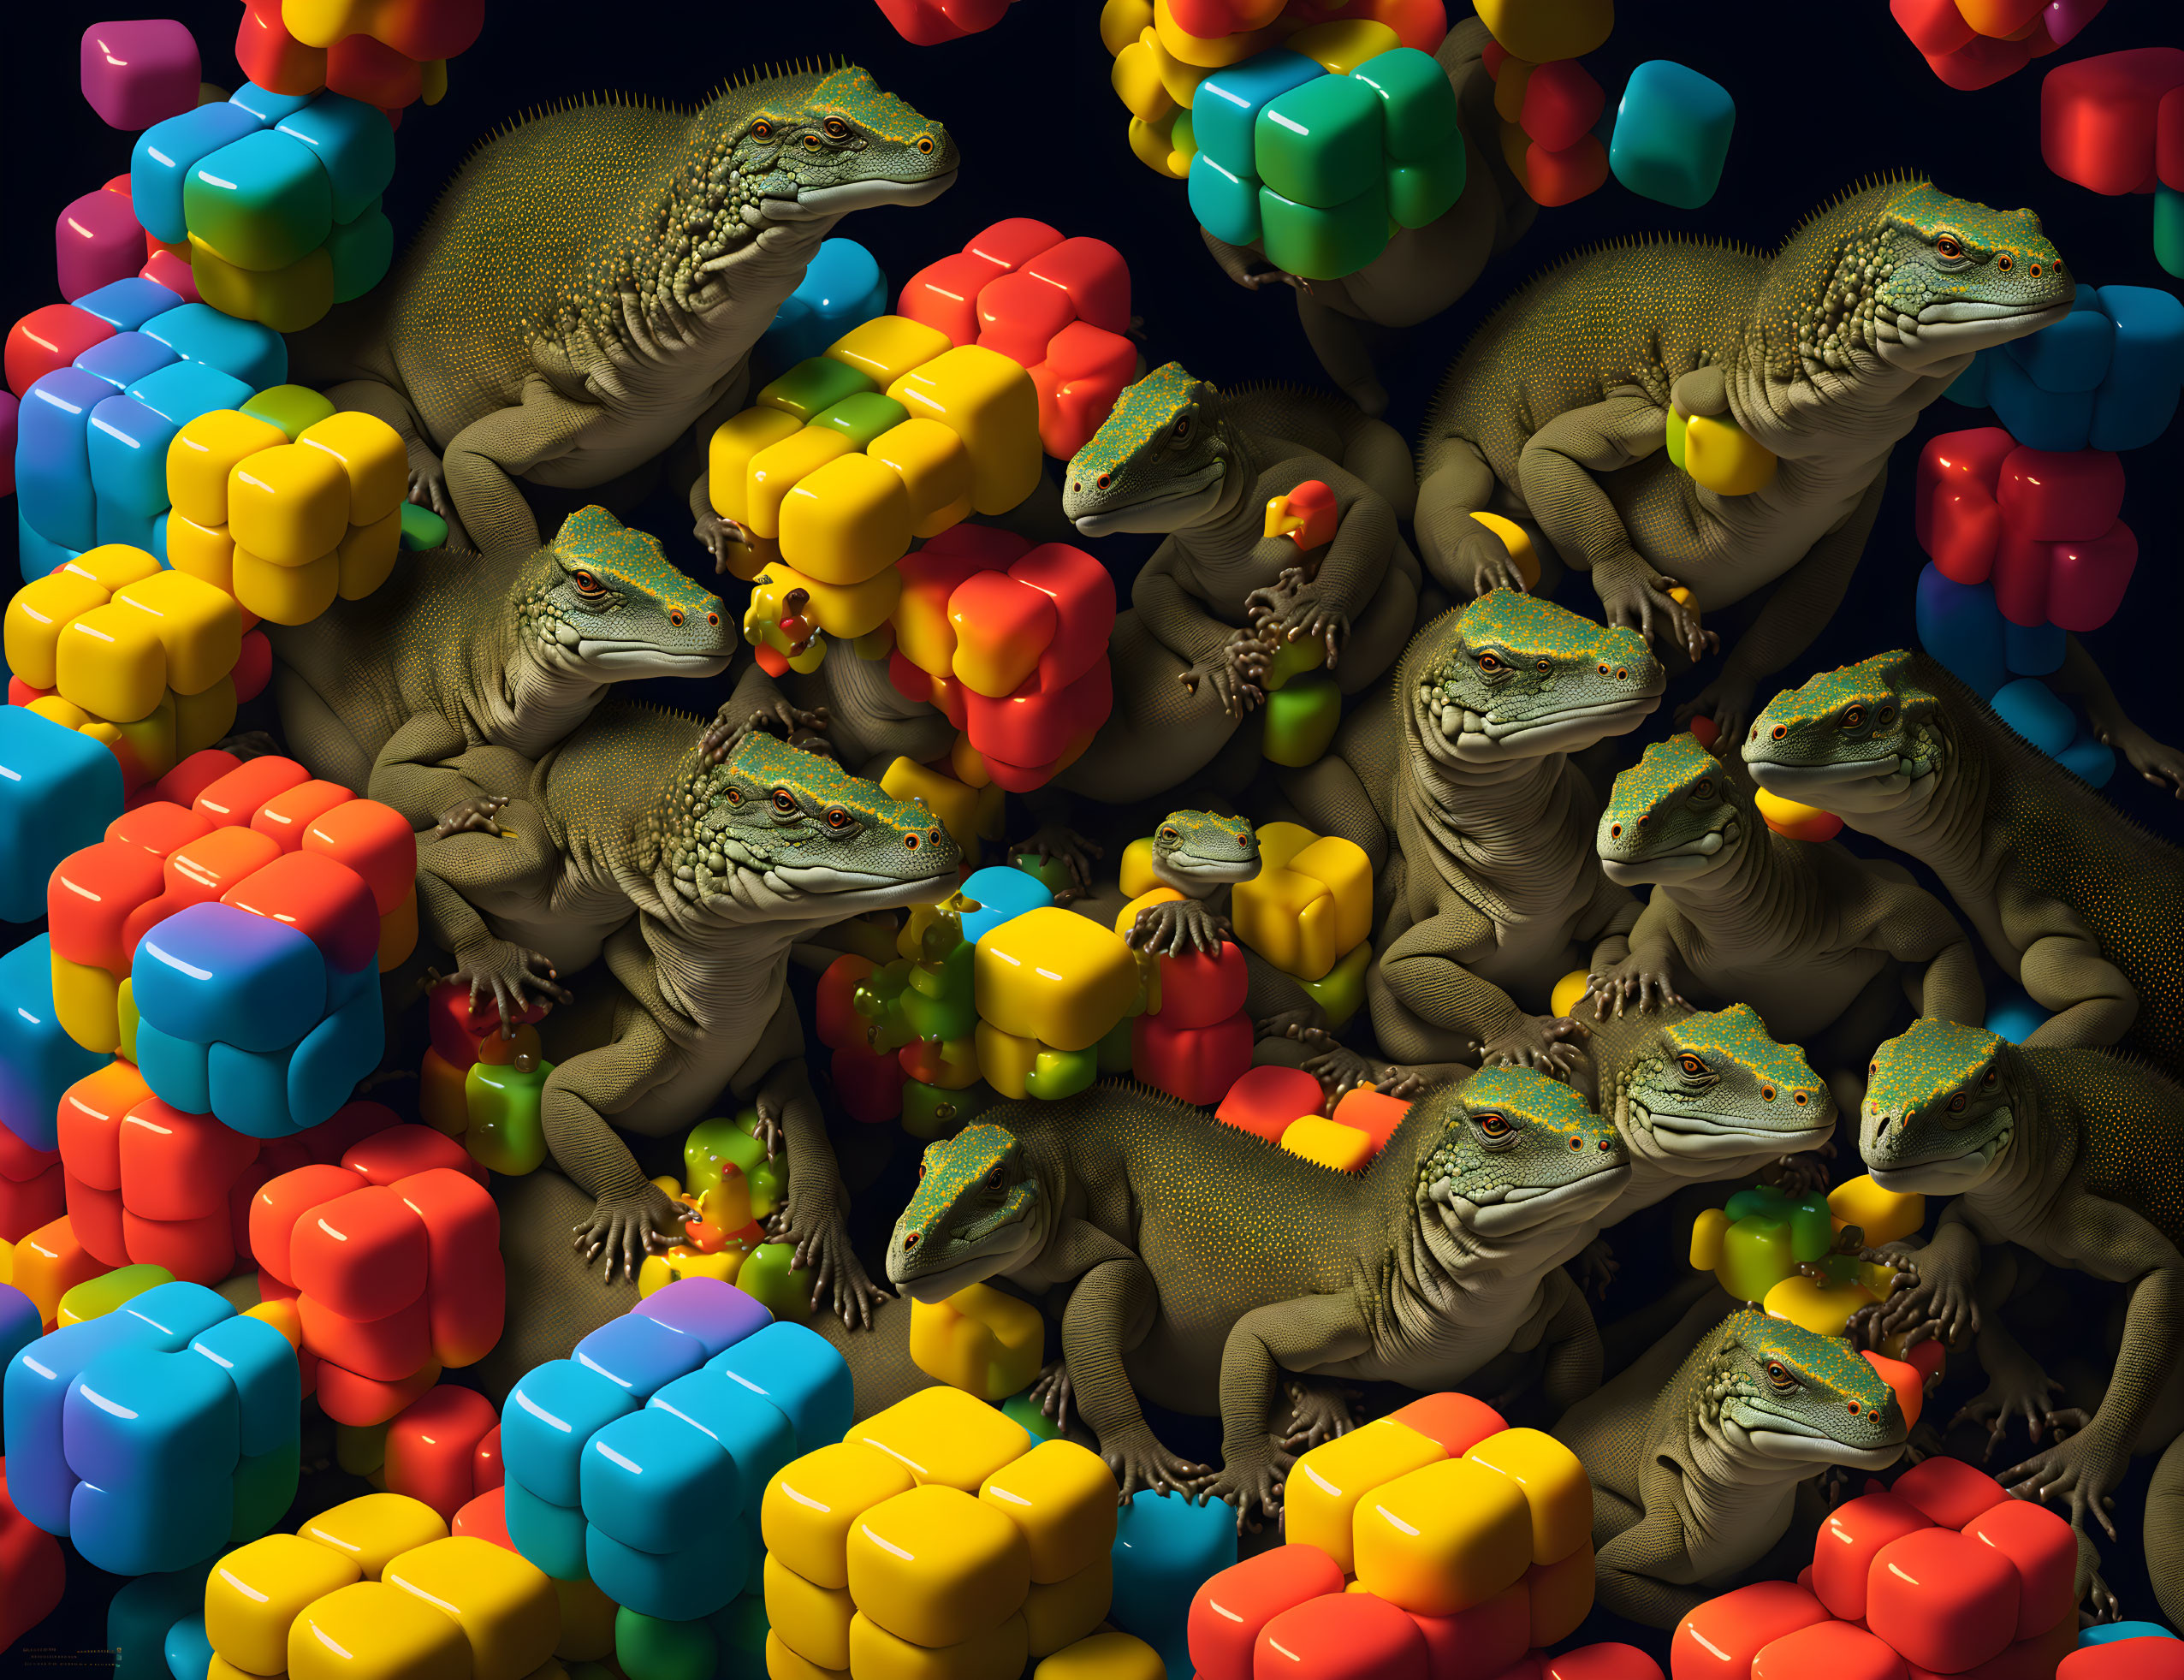 Komodo dragons, Rubik's cubes #2